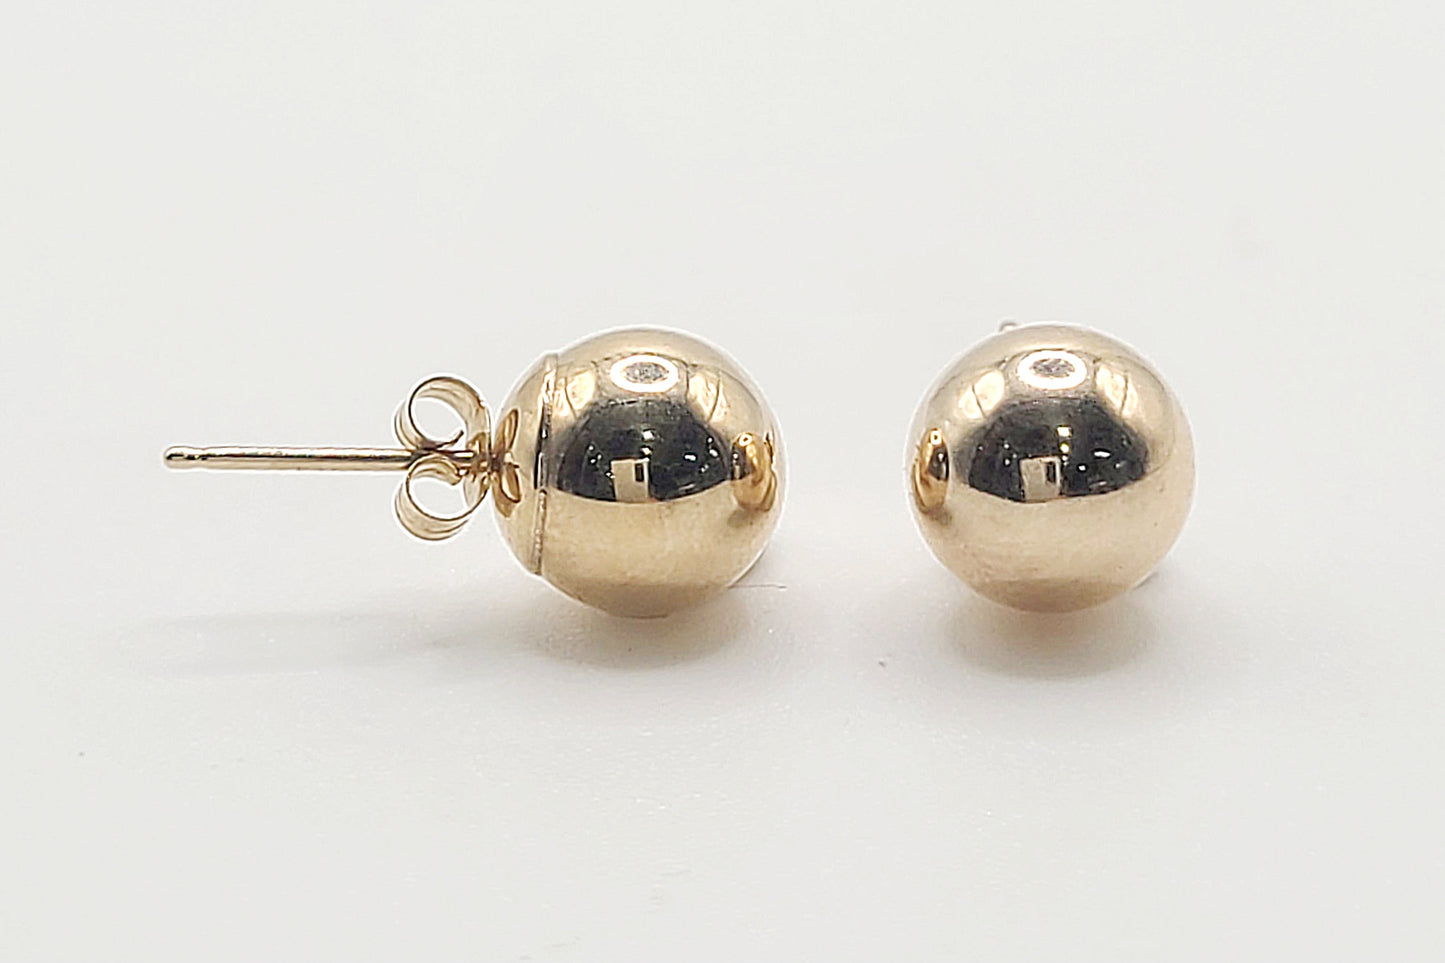 9ct Gold Ball Stud Earrings for Pierced Ears